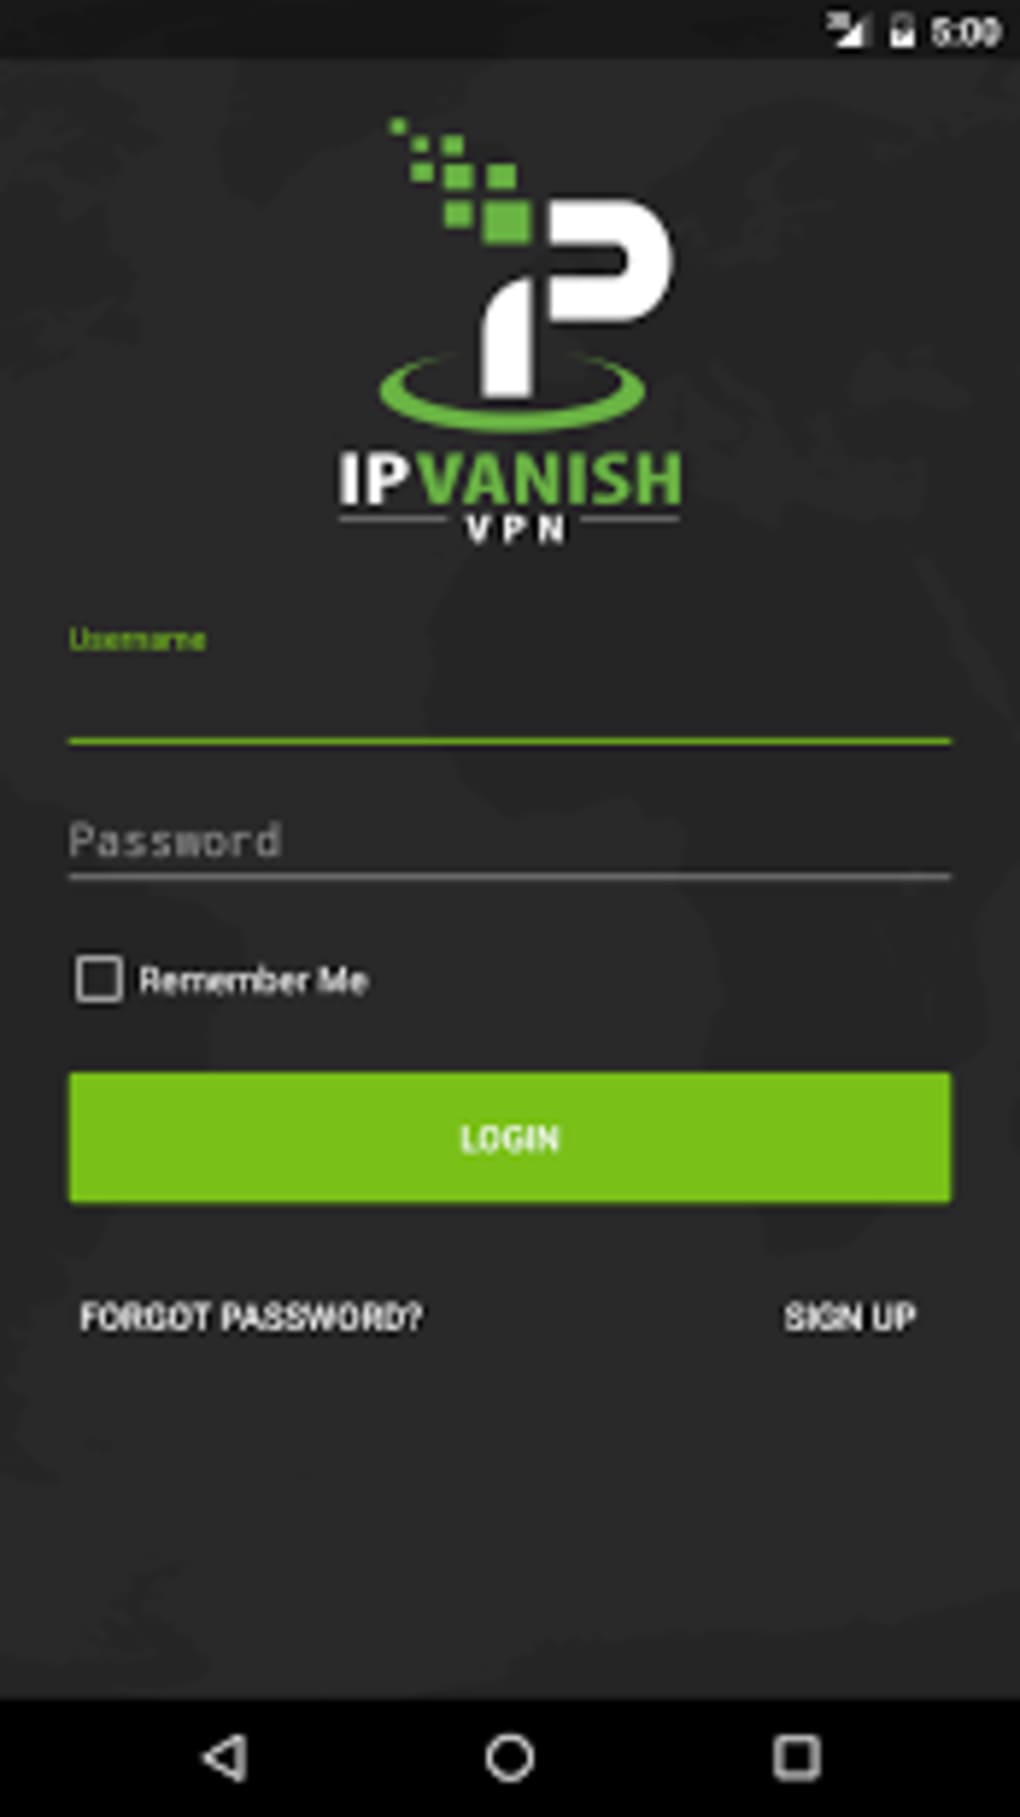 Ipvanish mac not connecting